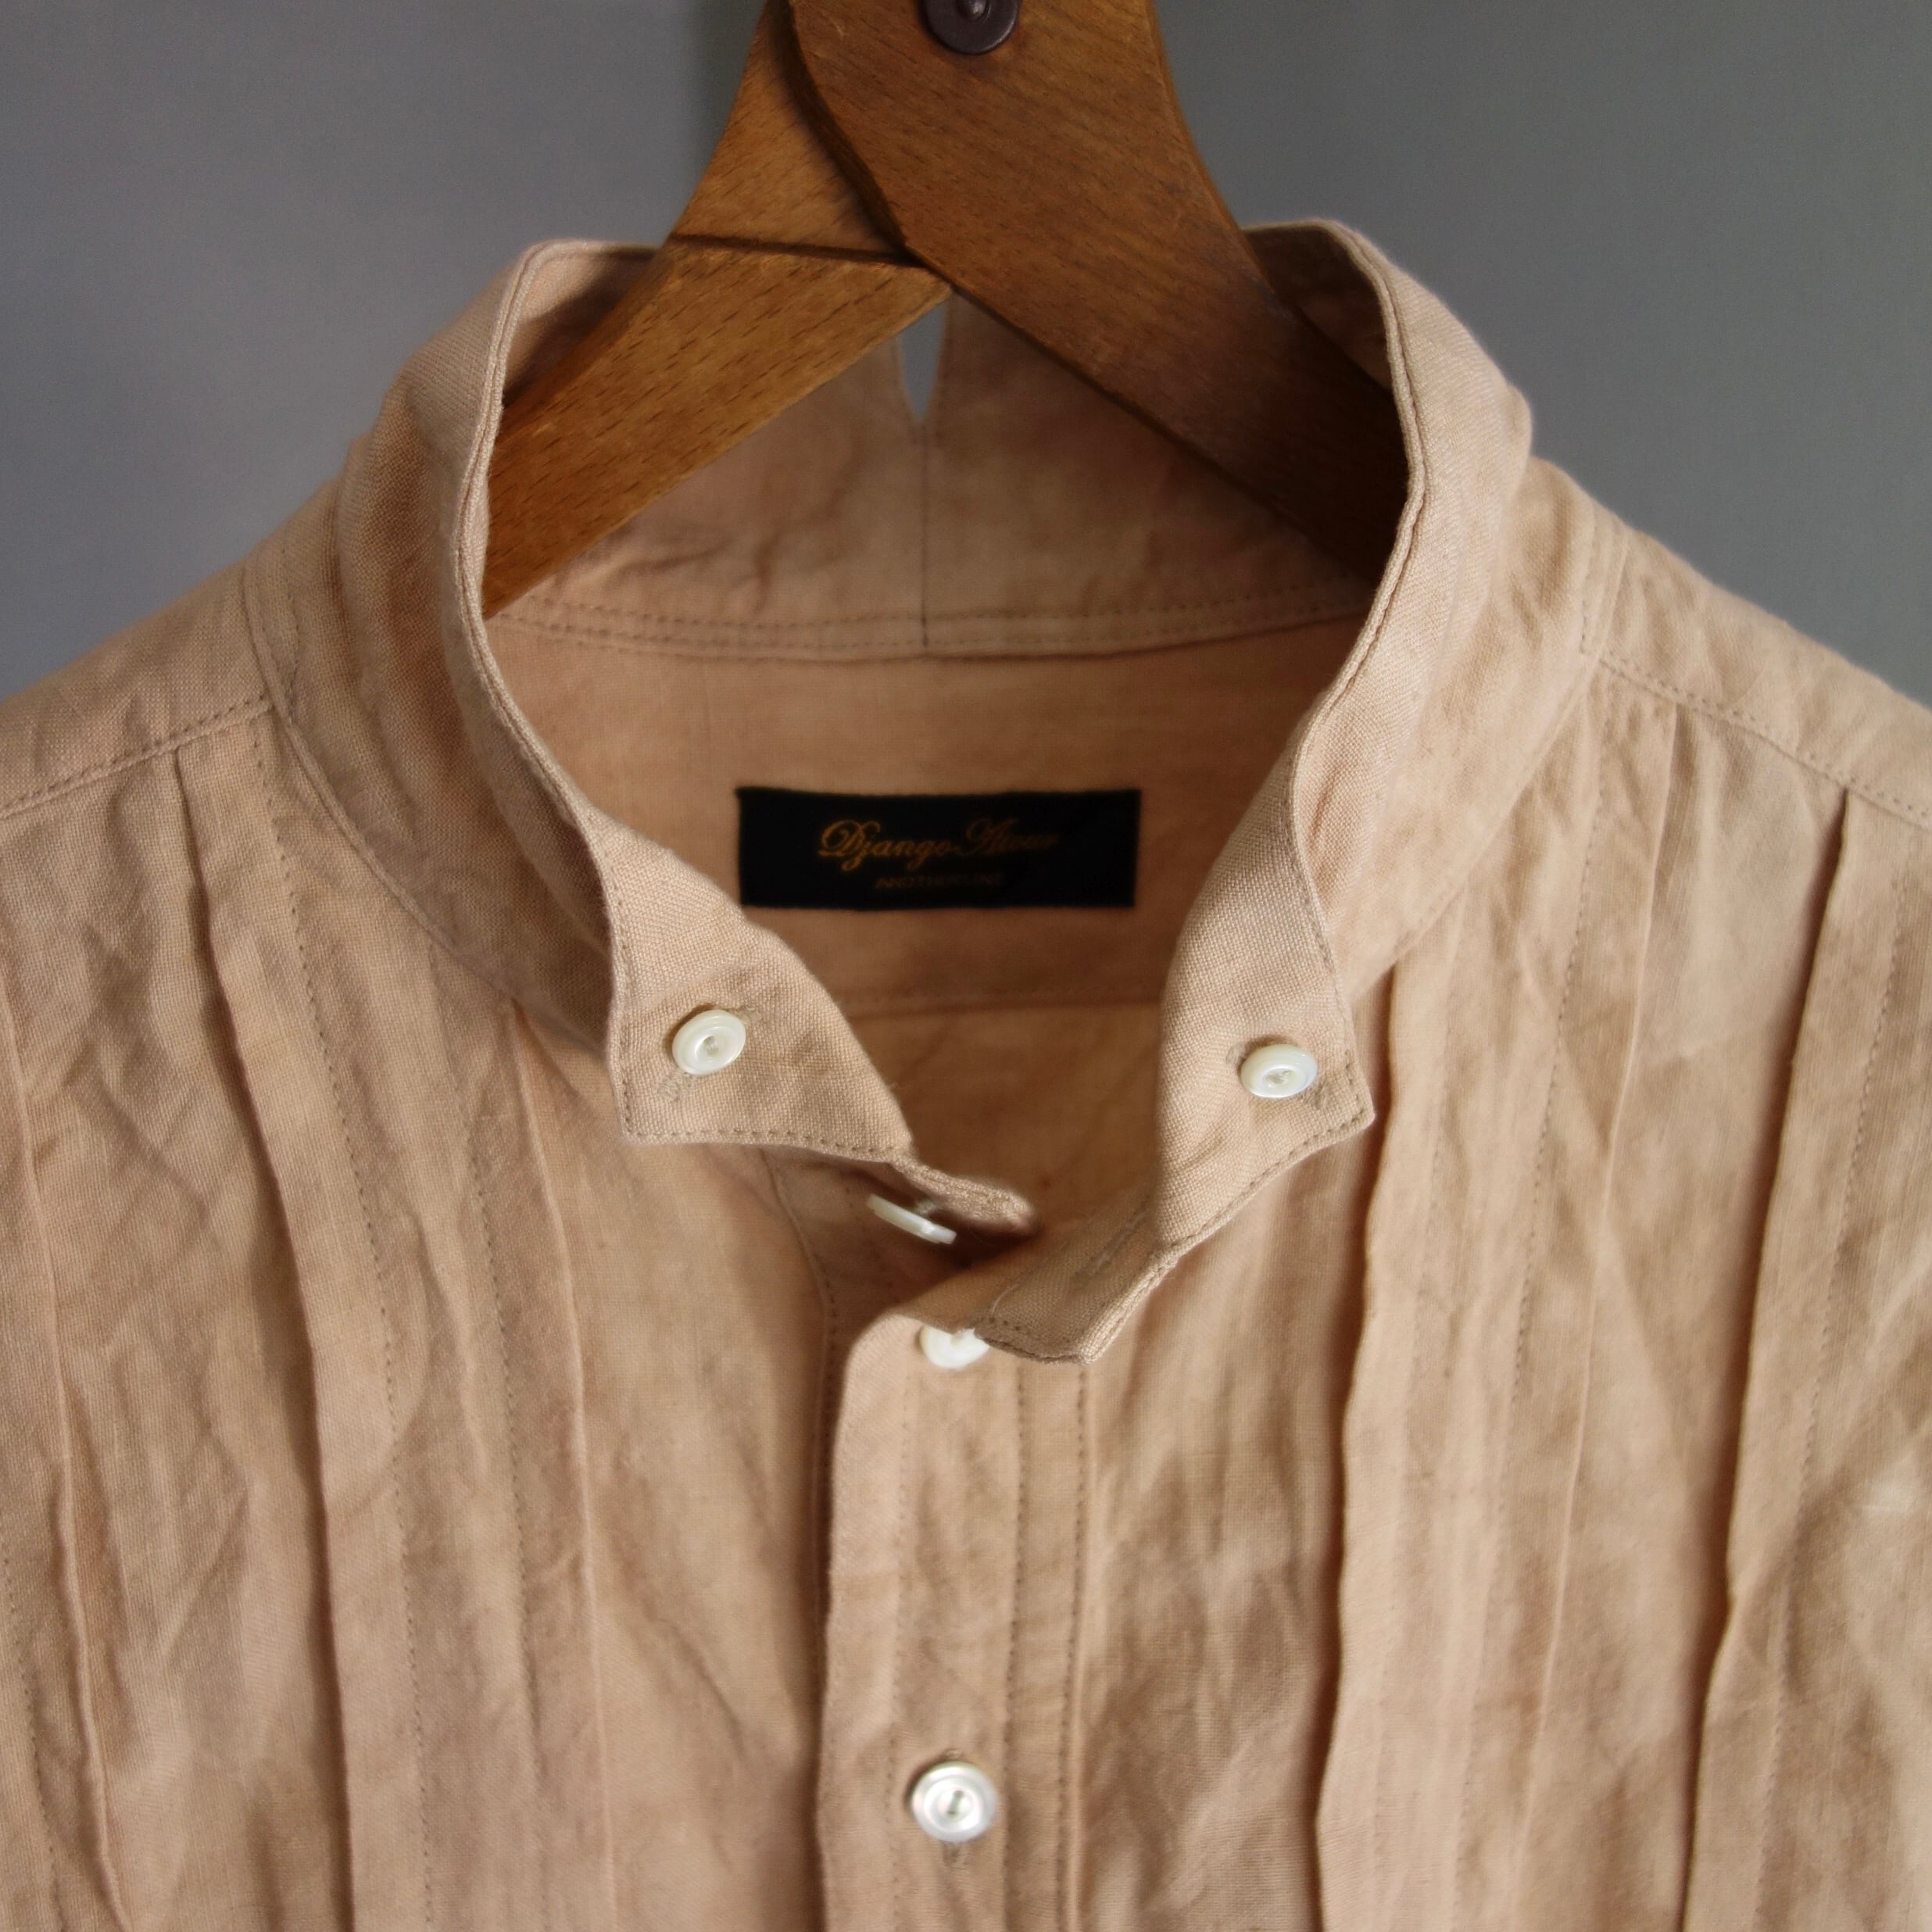 frenchvictorians button-down heavylinen shirt / antique lightorange